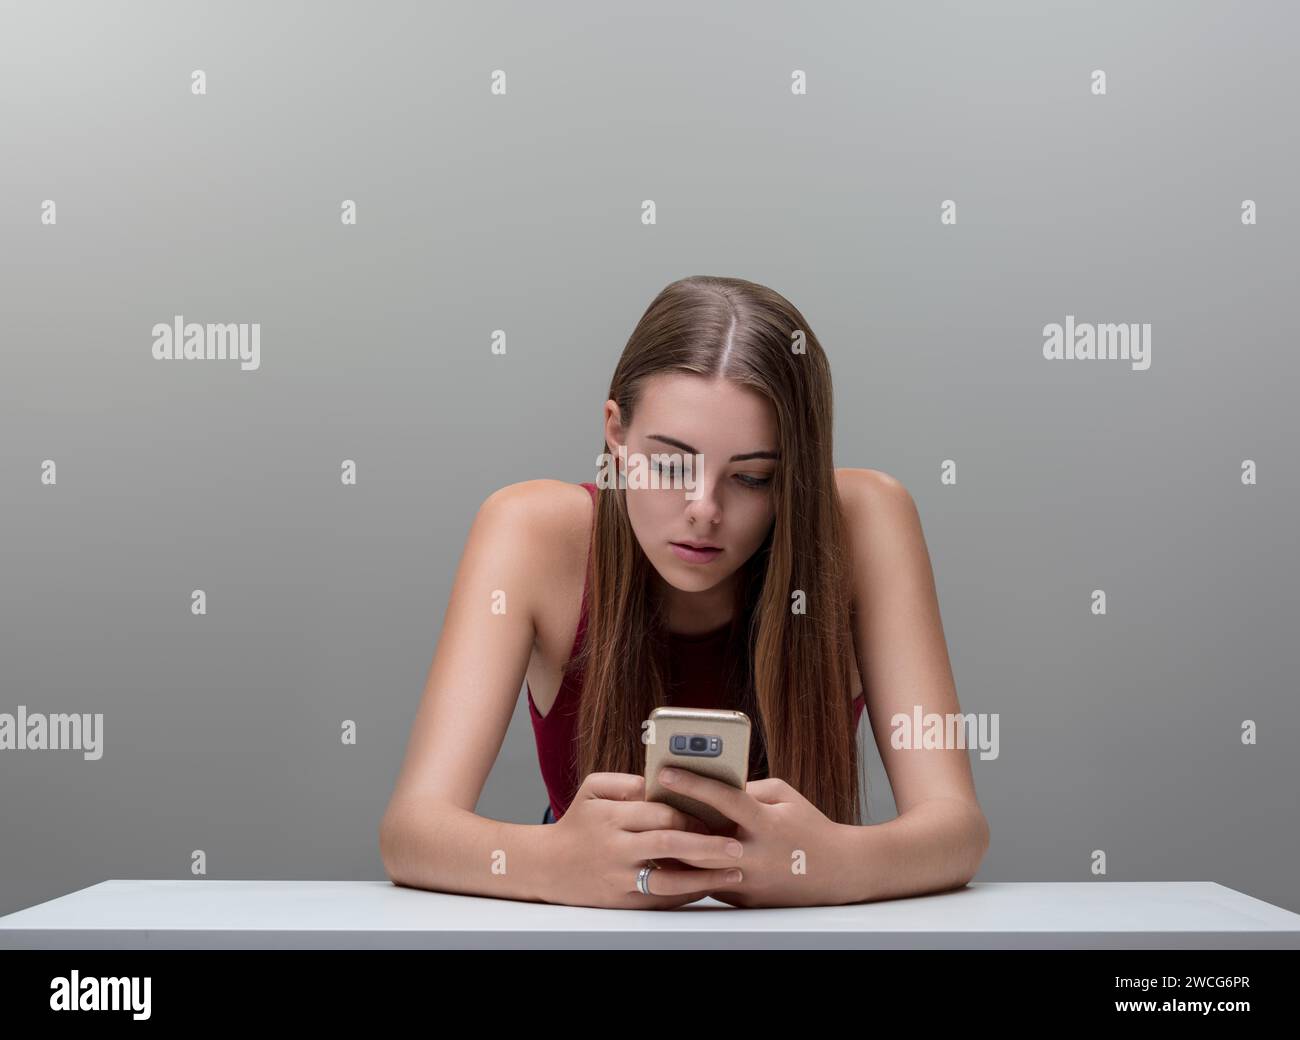 Incastonata nel suo telefono, l'attenzione della donna riflette l'assorbimento dell'era digitale, la parte superiore marrone in contrasto con il grigio Foto Stock